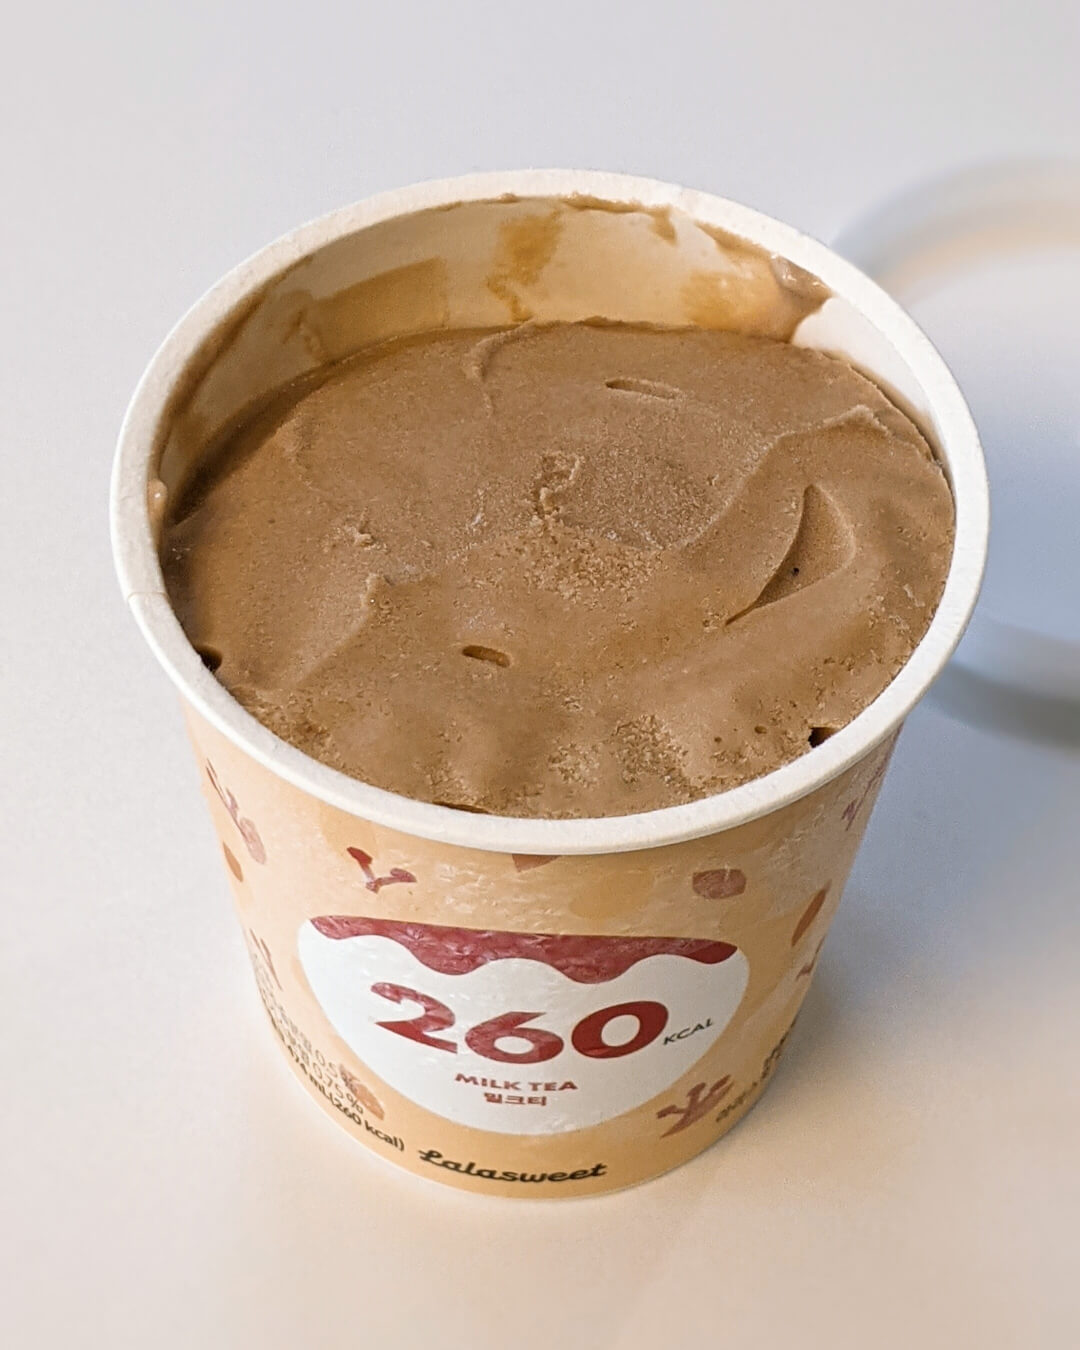 연한 브라운색의 라라스윗 밀크티 아이스크림 내용물이 보이는 장면